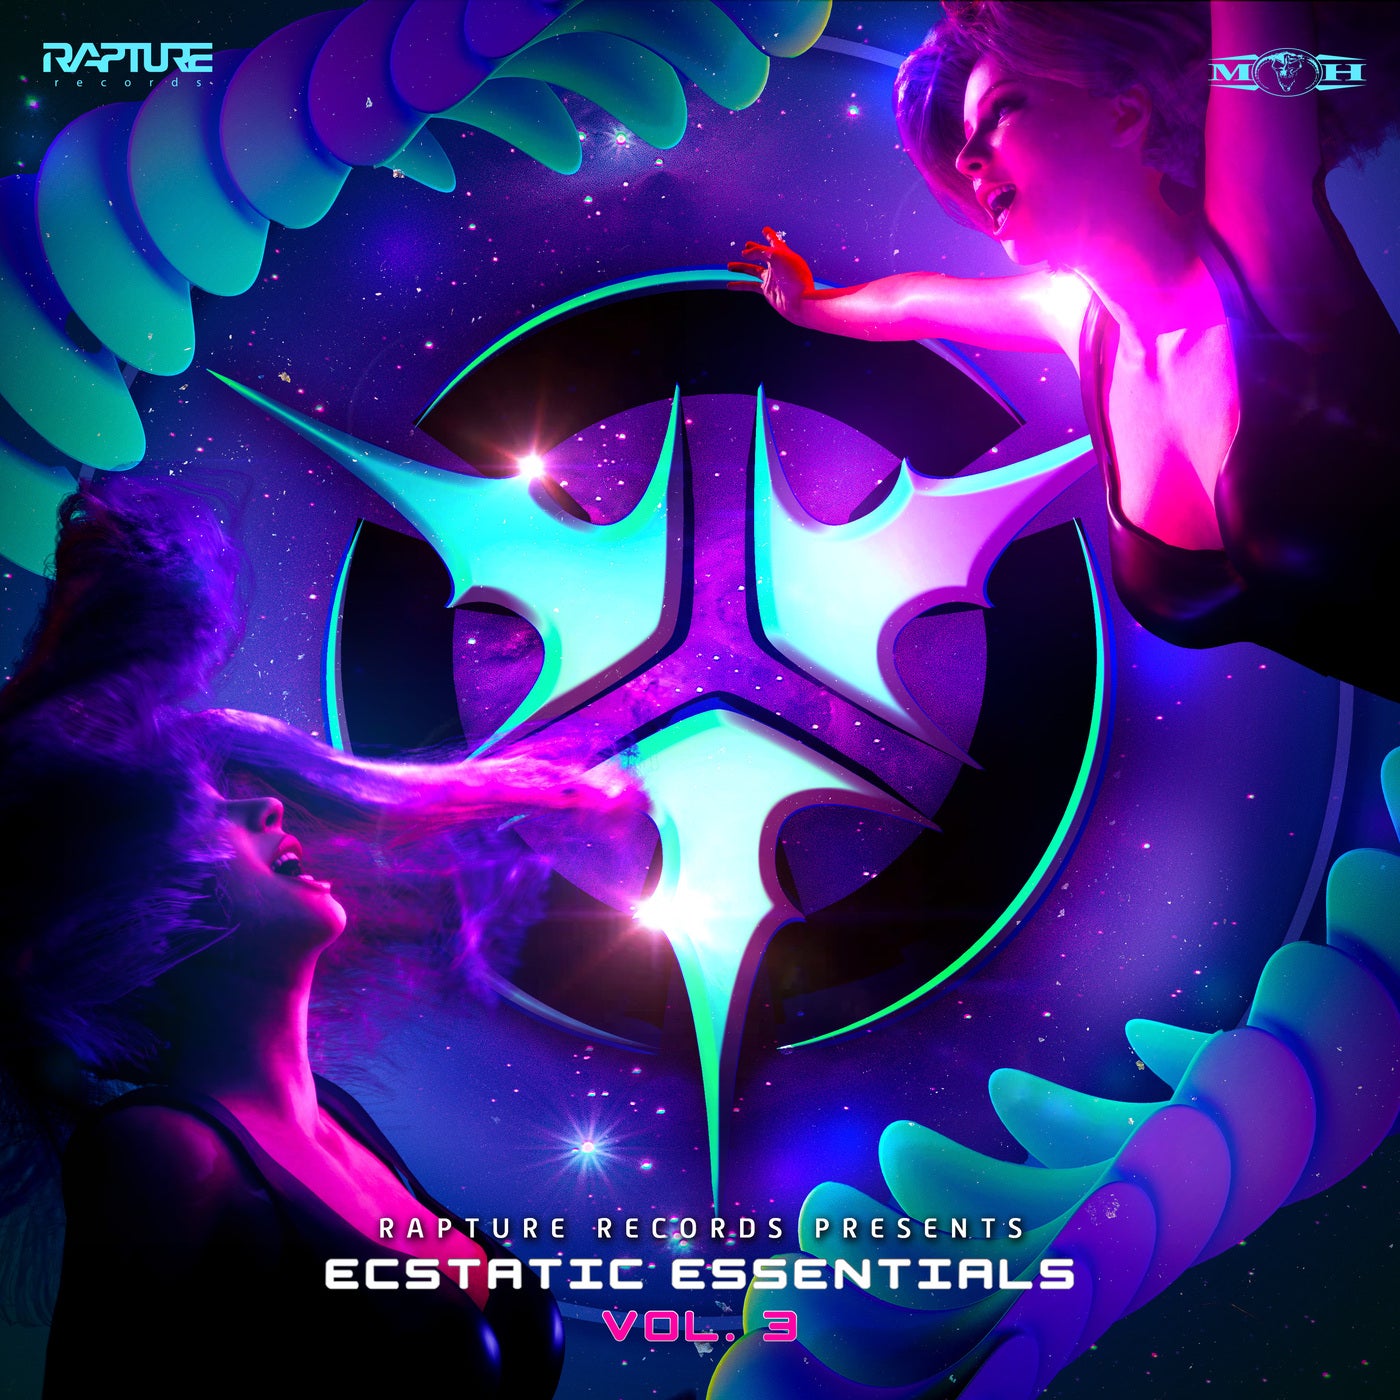 Ecstatic Essentials Vol.3 - Extended Mix